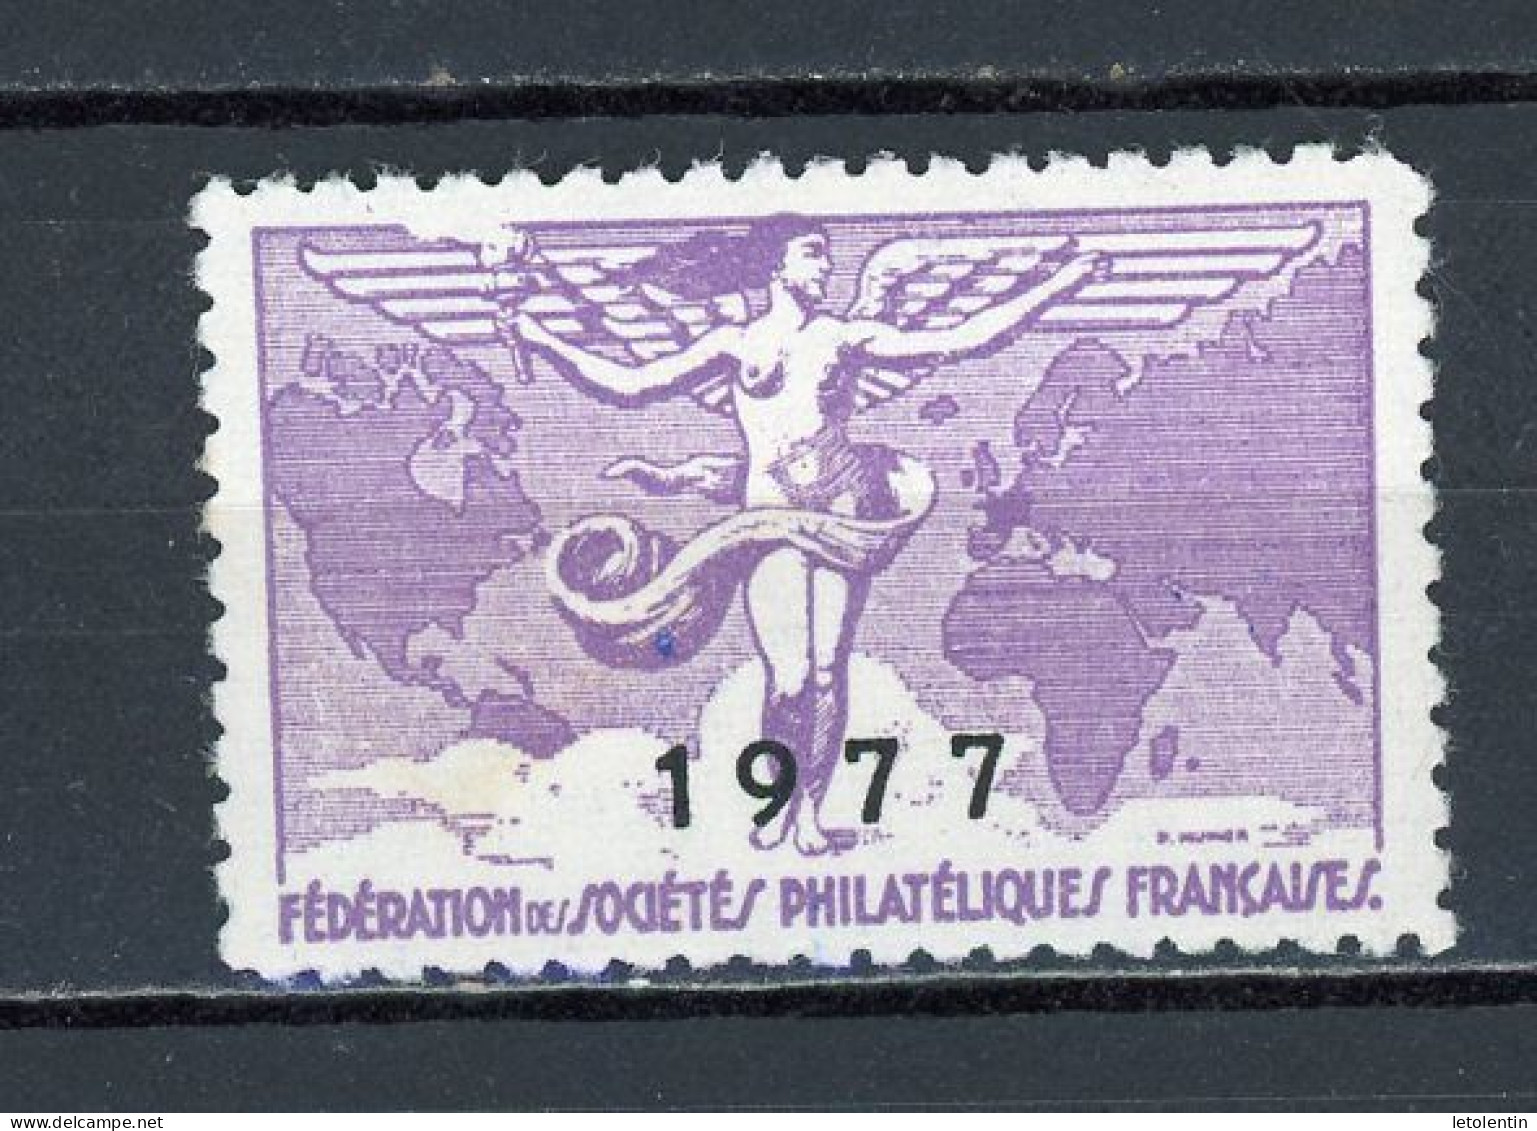 FEDERATION DES SOCIÉTÉS PHILATÉLIQUES FRANÇAISES 1977 * - Expositions Philatéliques